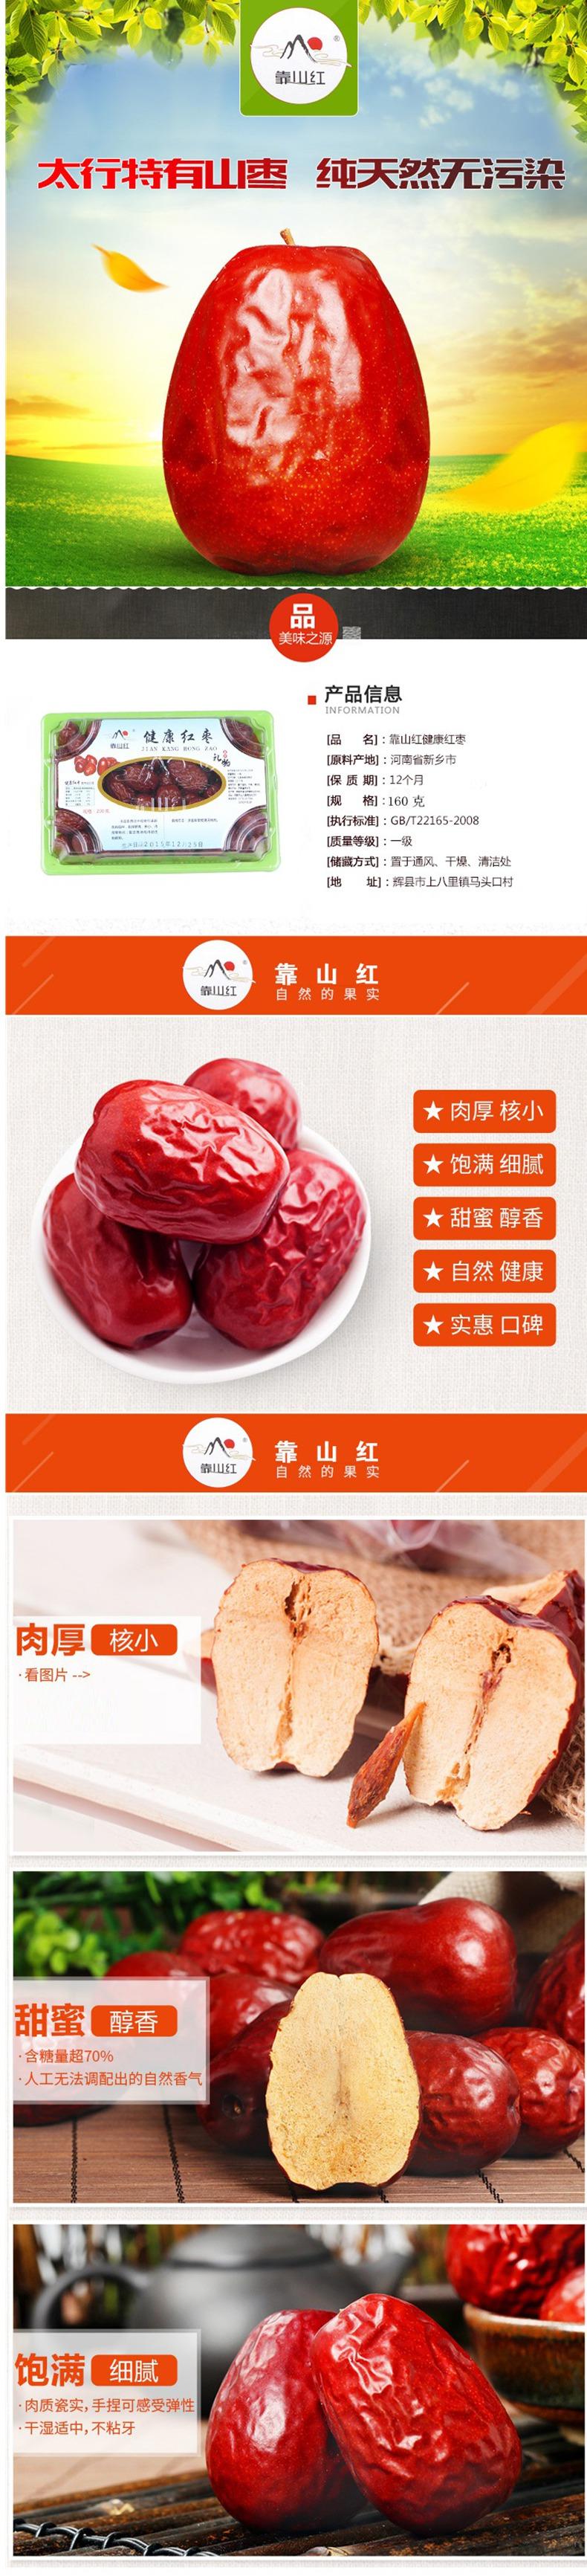 【精品试吃】靠山红健康红枣160g  干果 包邮 零食 营养 补气补血